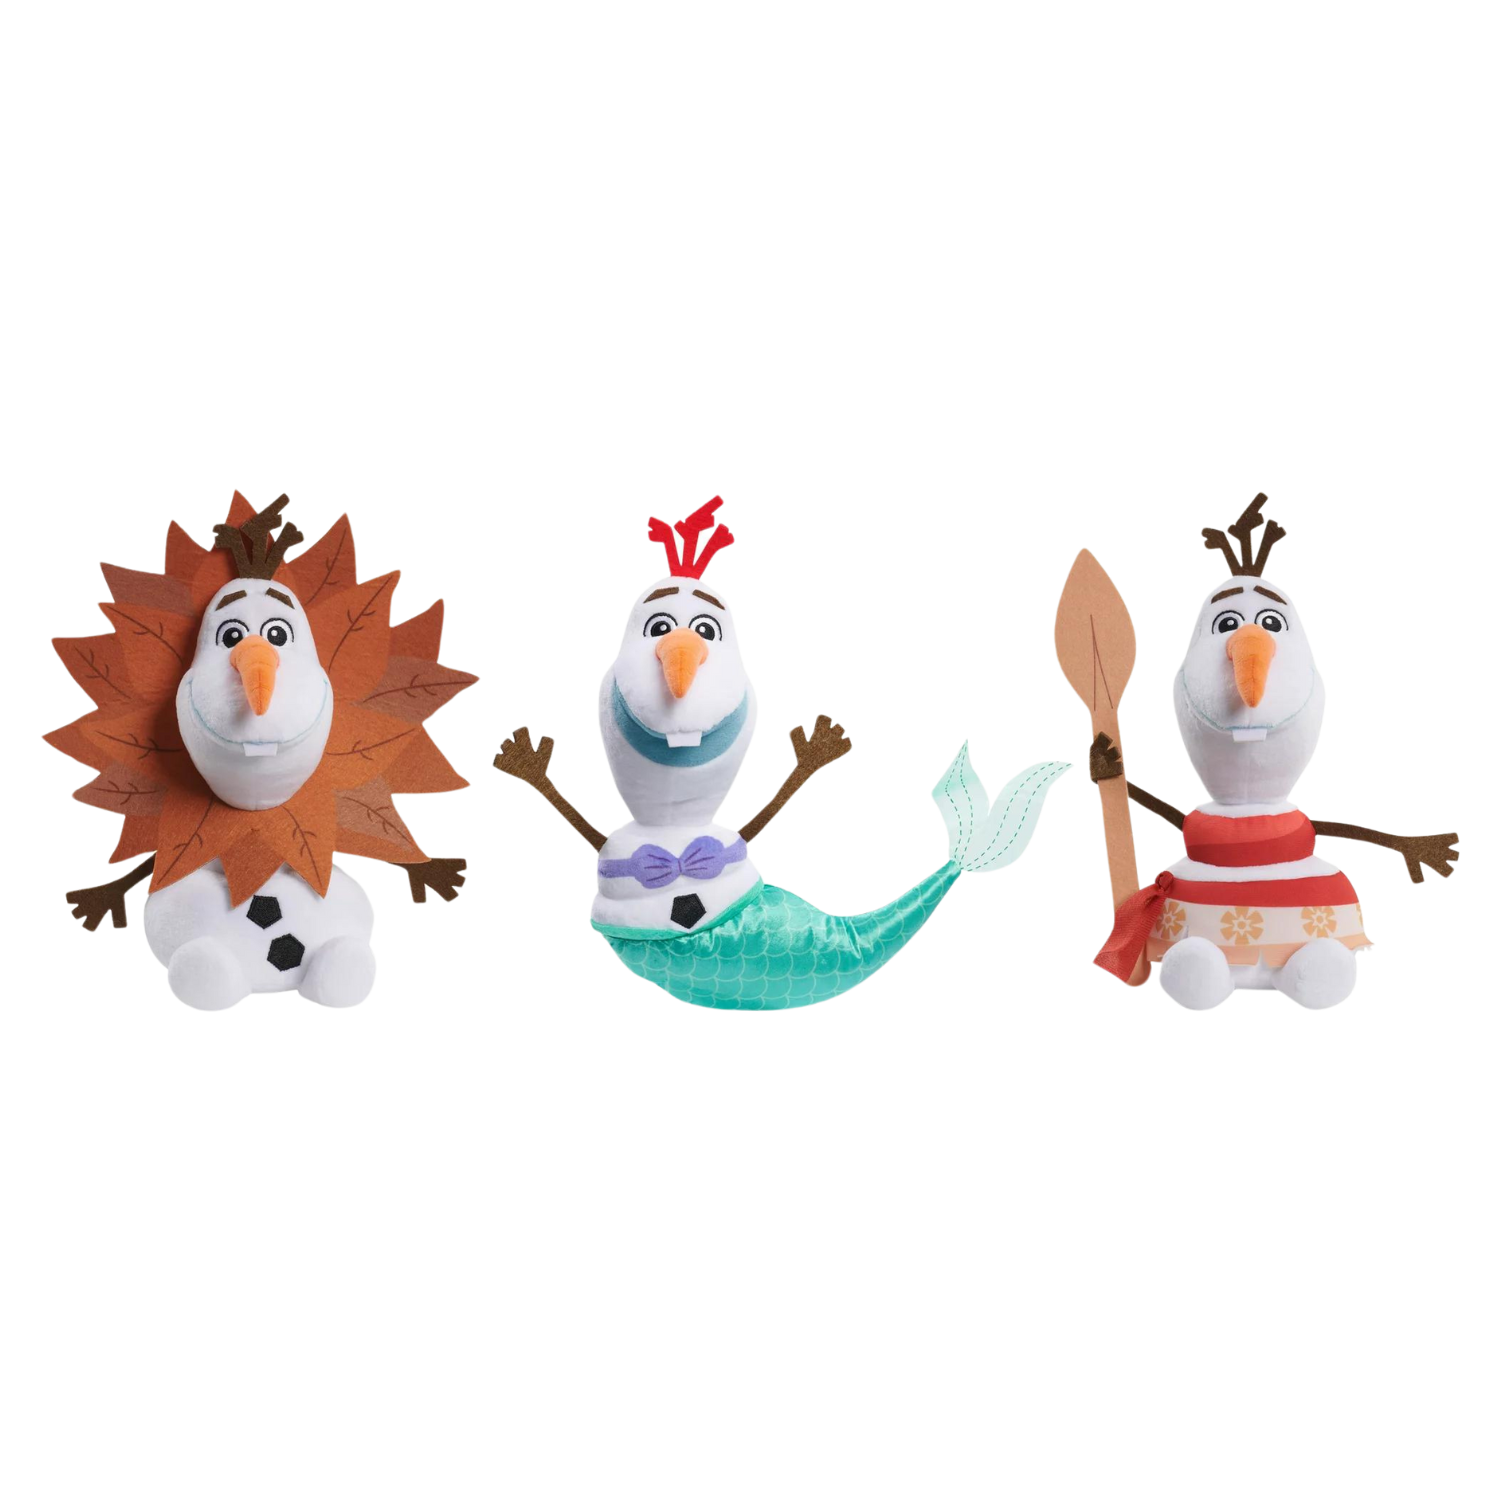 這張圖片展示了三個冰雪奇緣奧拉夫雪人娃娃扮成辛巴、小美人魚和莫娜娜的樣子。